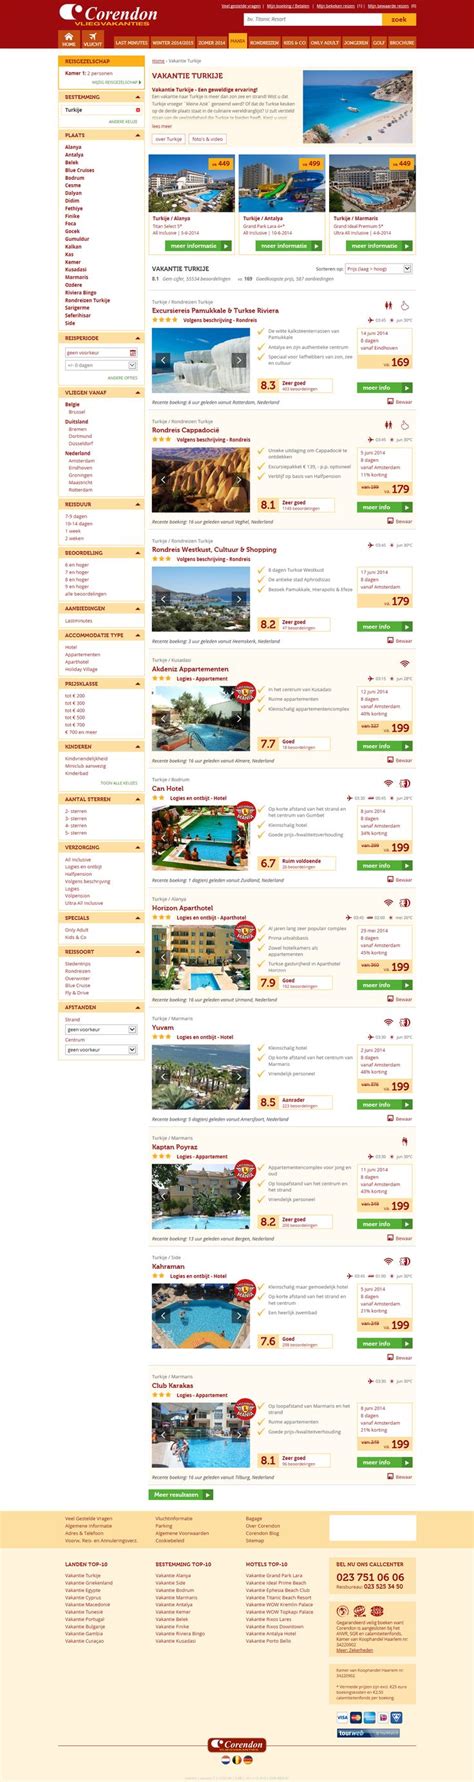 corendon  search result list vakantie bestemmingen